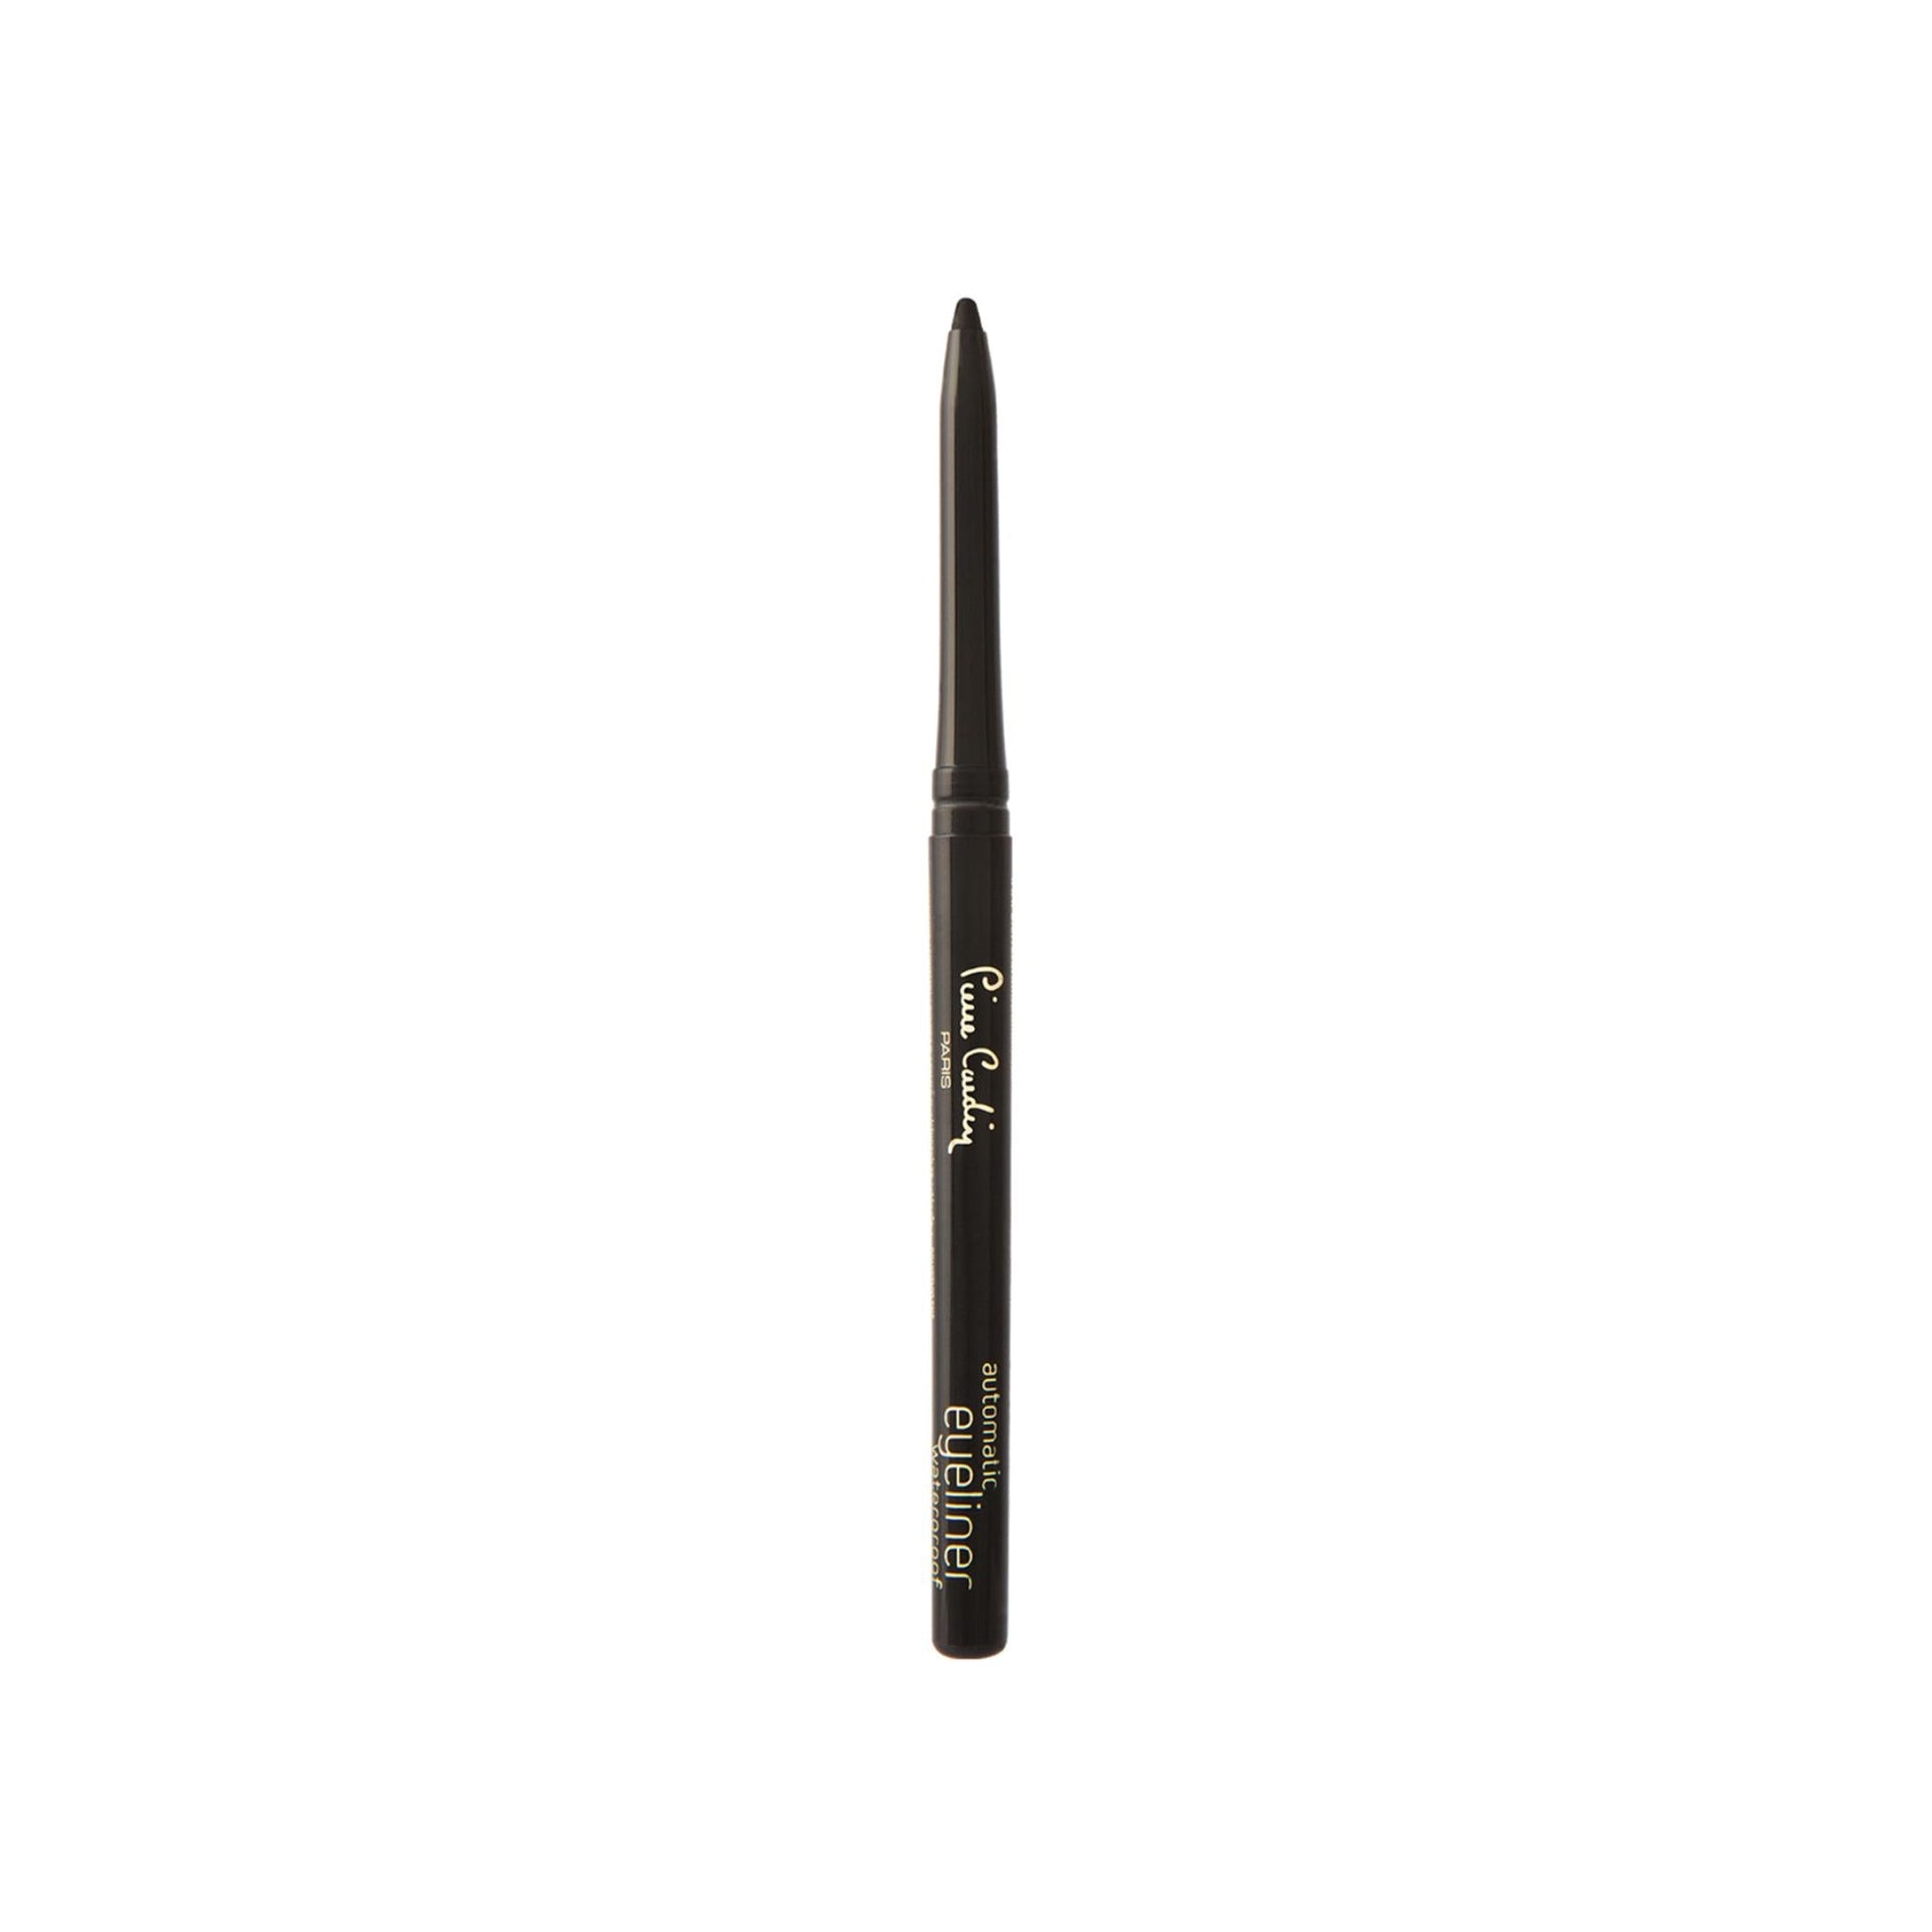 Pierre Cardin Paris Automatic Waterproof Eyeliner Pencil - Black 502